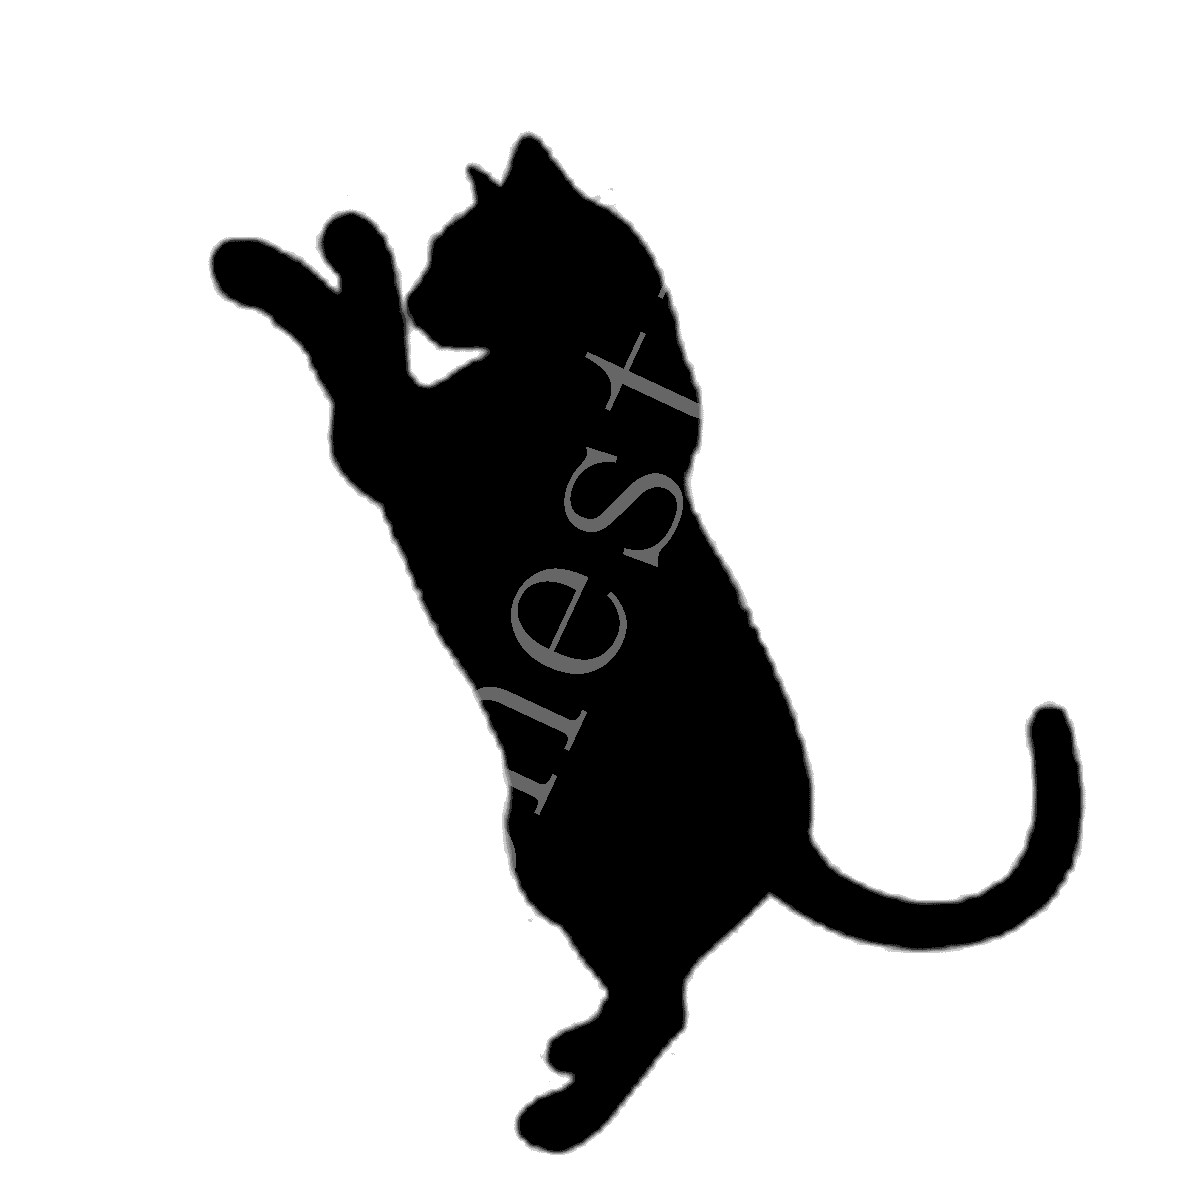 fond d'écran kucing anggora persia bergerak,chat,silhouette,félidés,chats de petite à moyenne taille,chat noir